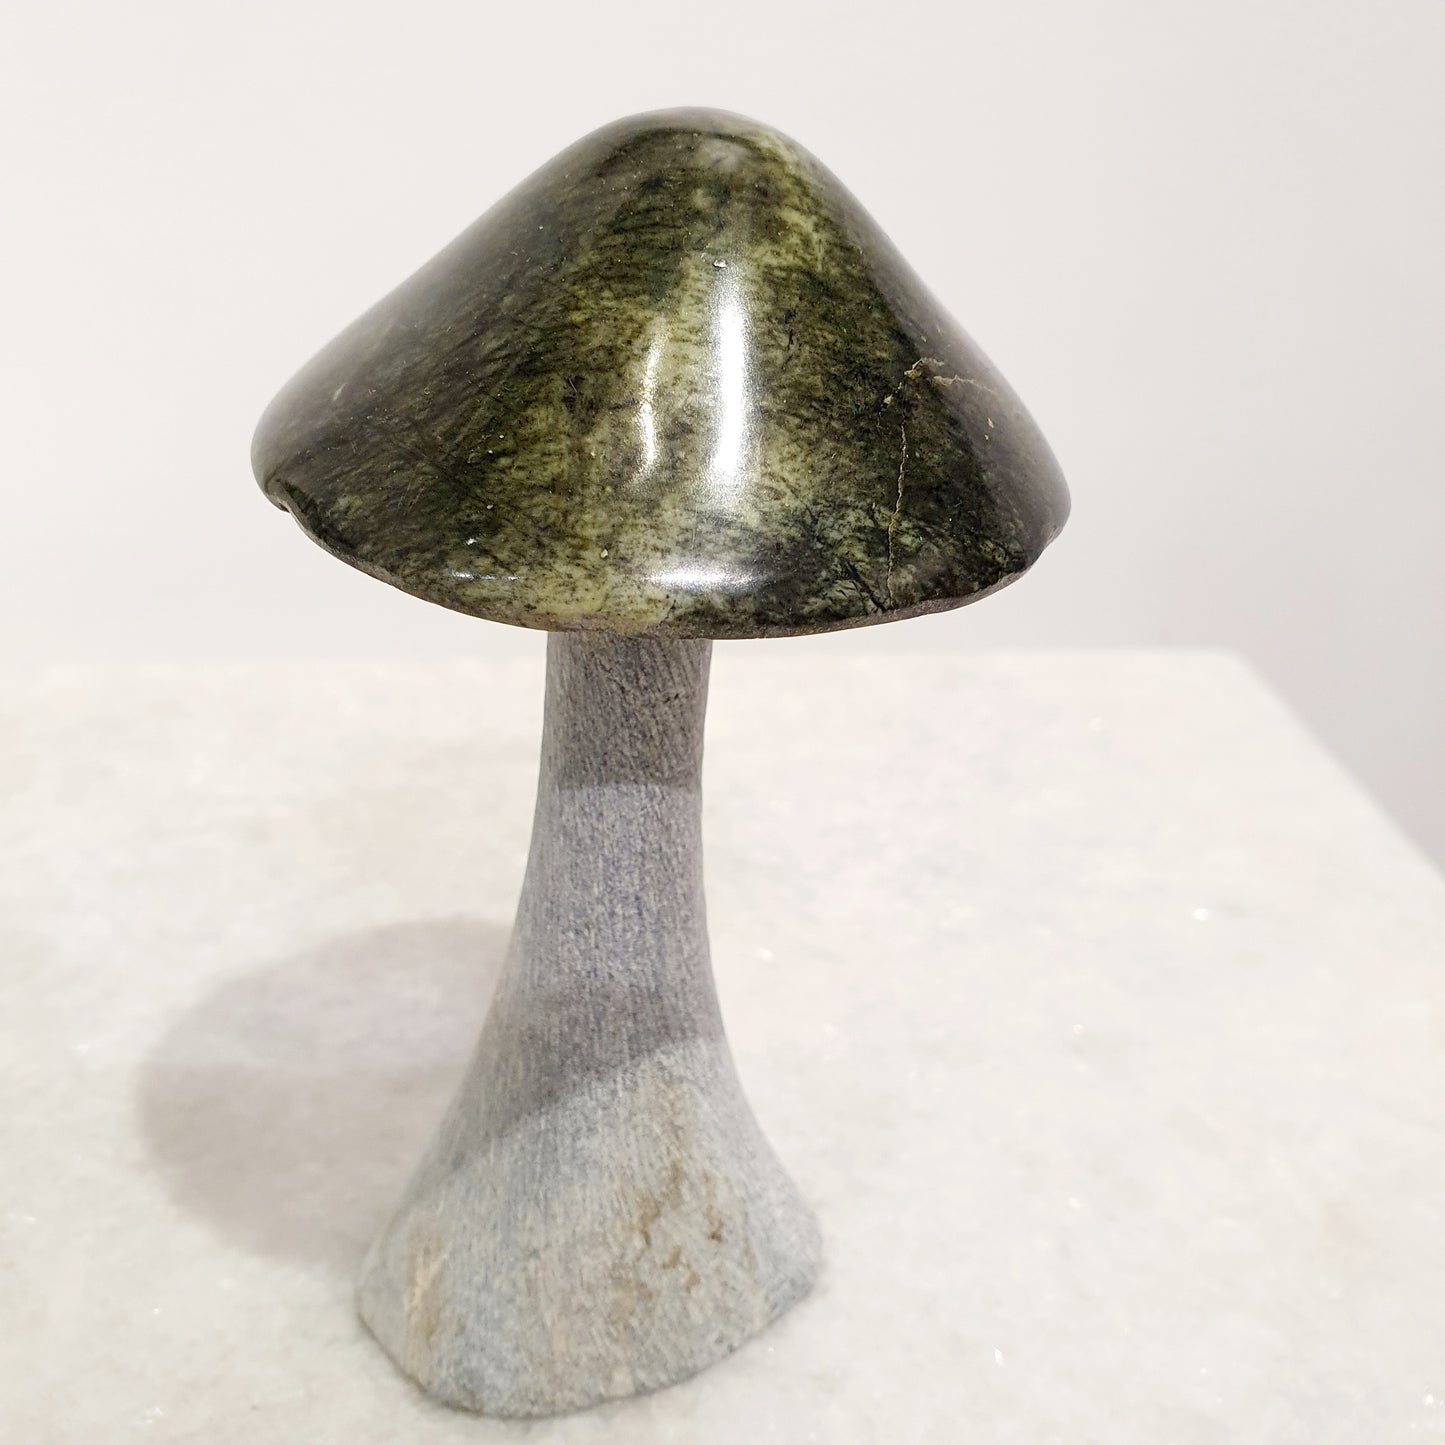 Stone Mushroom